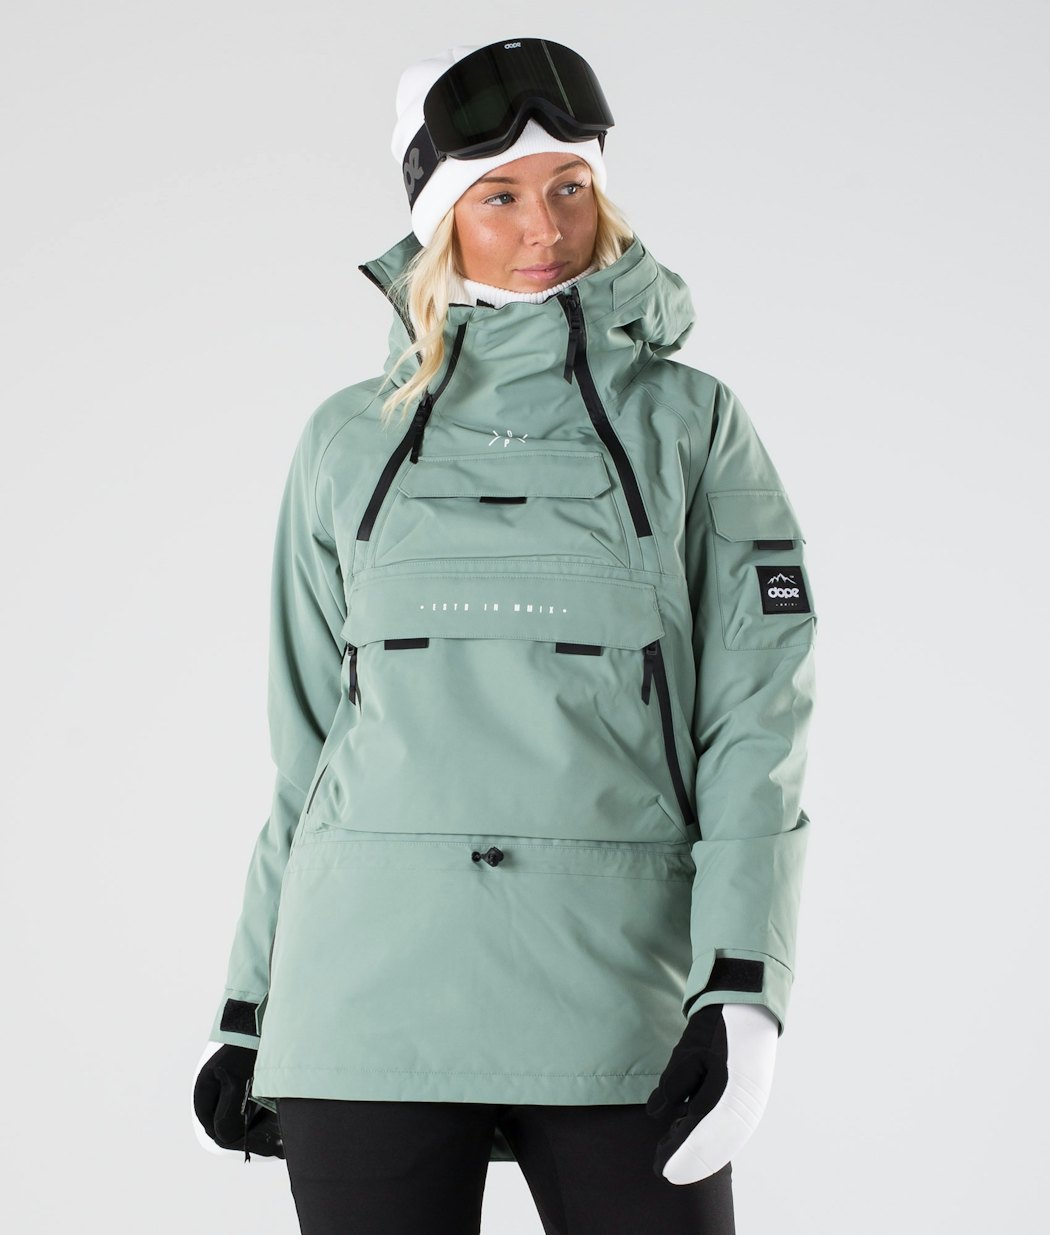 Akin W 2019 Snowboard Jacket Women Faded Green